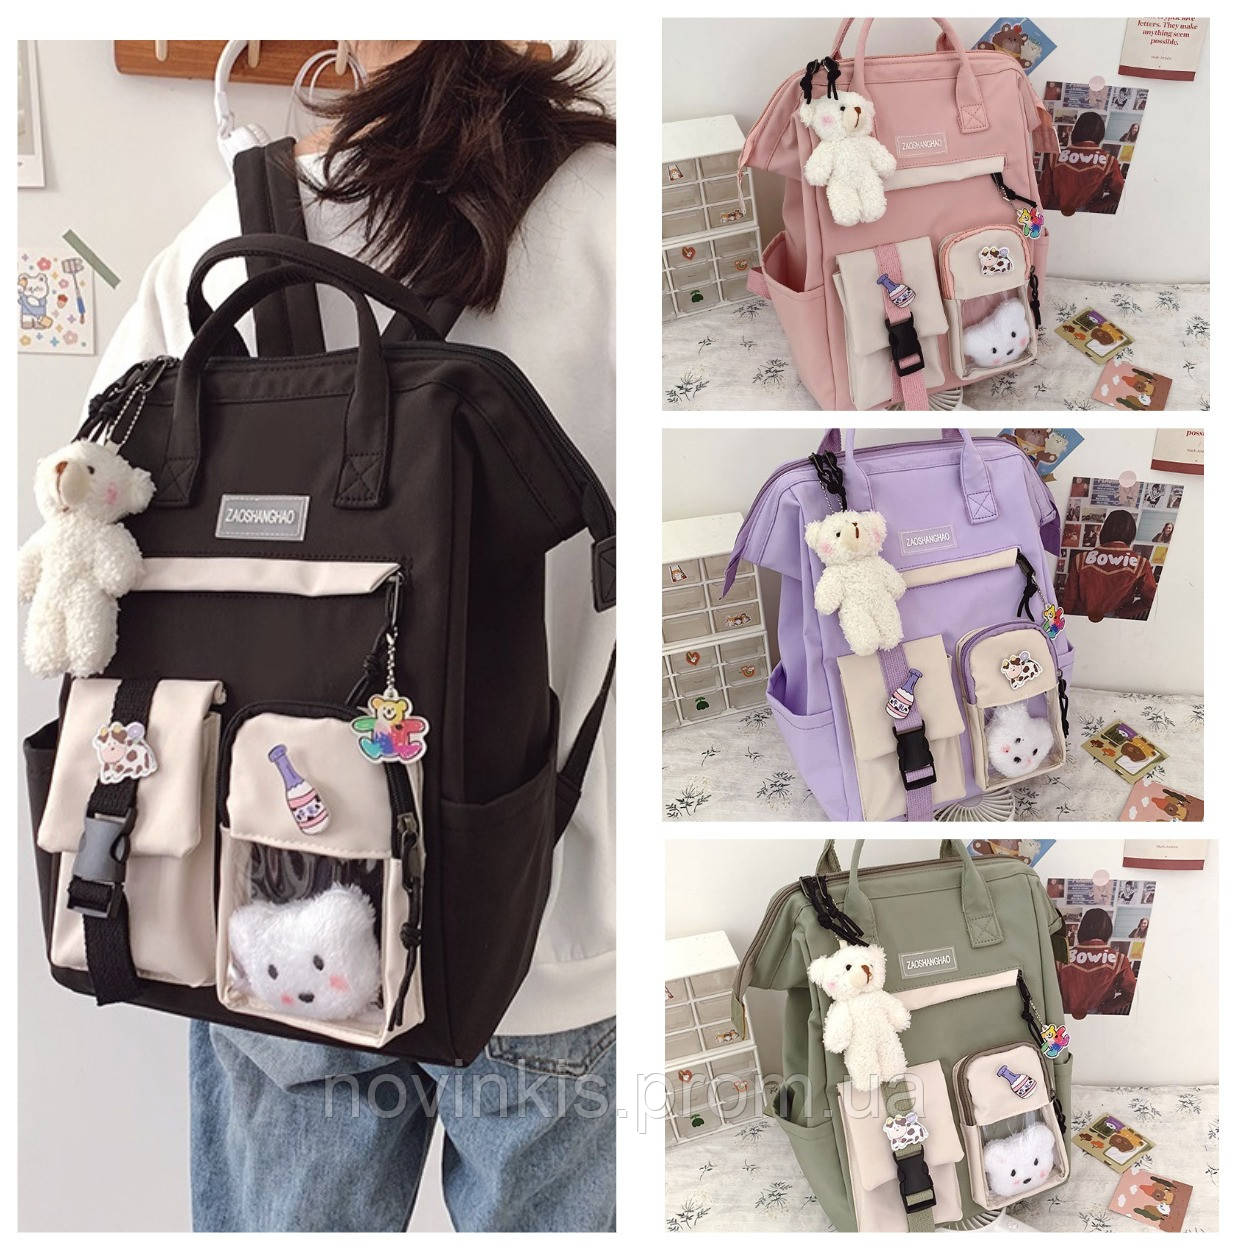 Шкільний підлітковий рюкзак, сумка-портфель для дівчинки 5-11 класу в наборі зі значками Education, 4 кольори